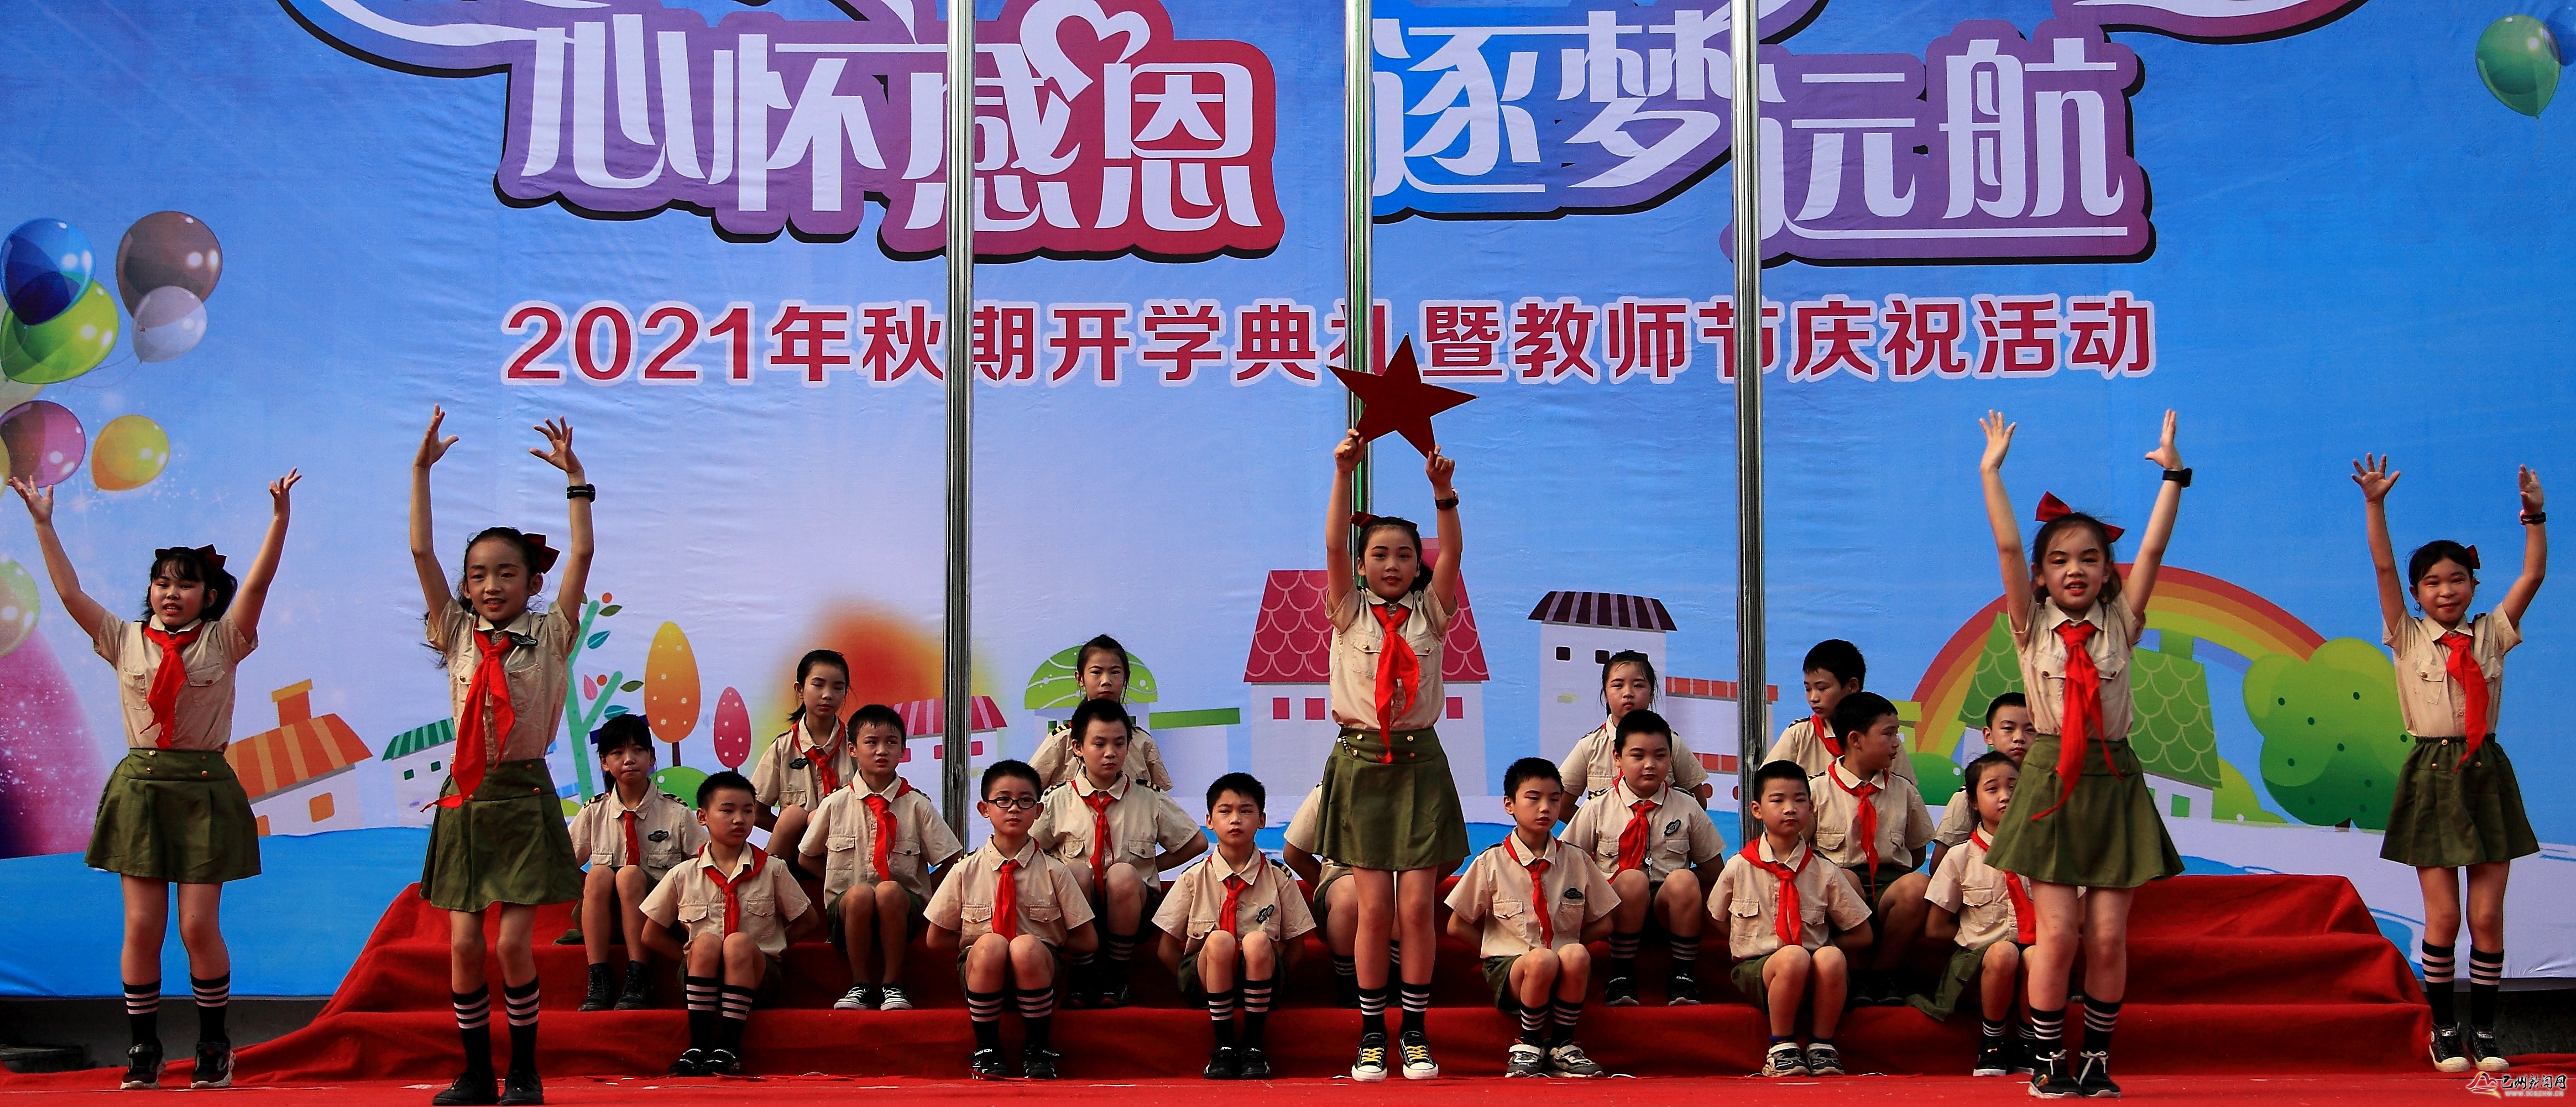 光辉小学举行庆祝第37个教师节暨2021年秋开学典礼